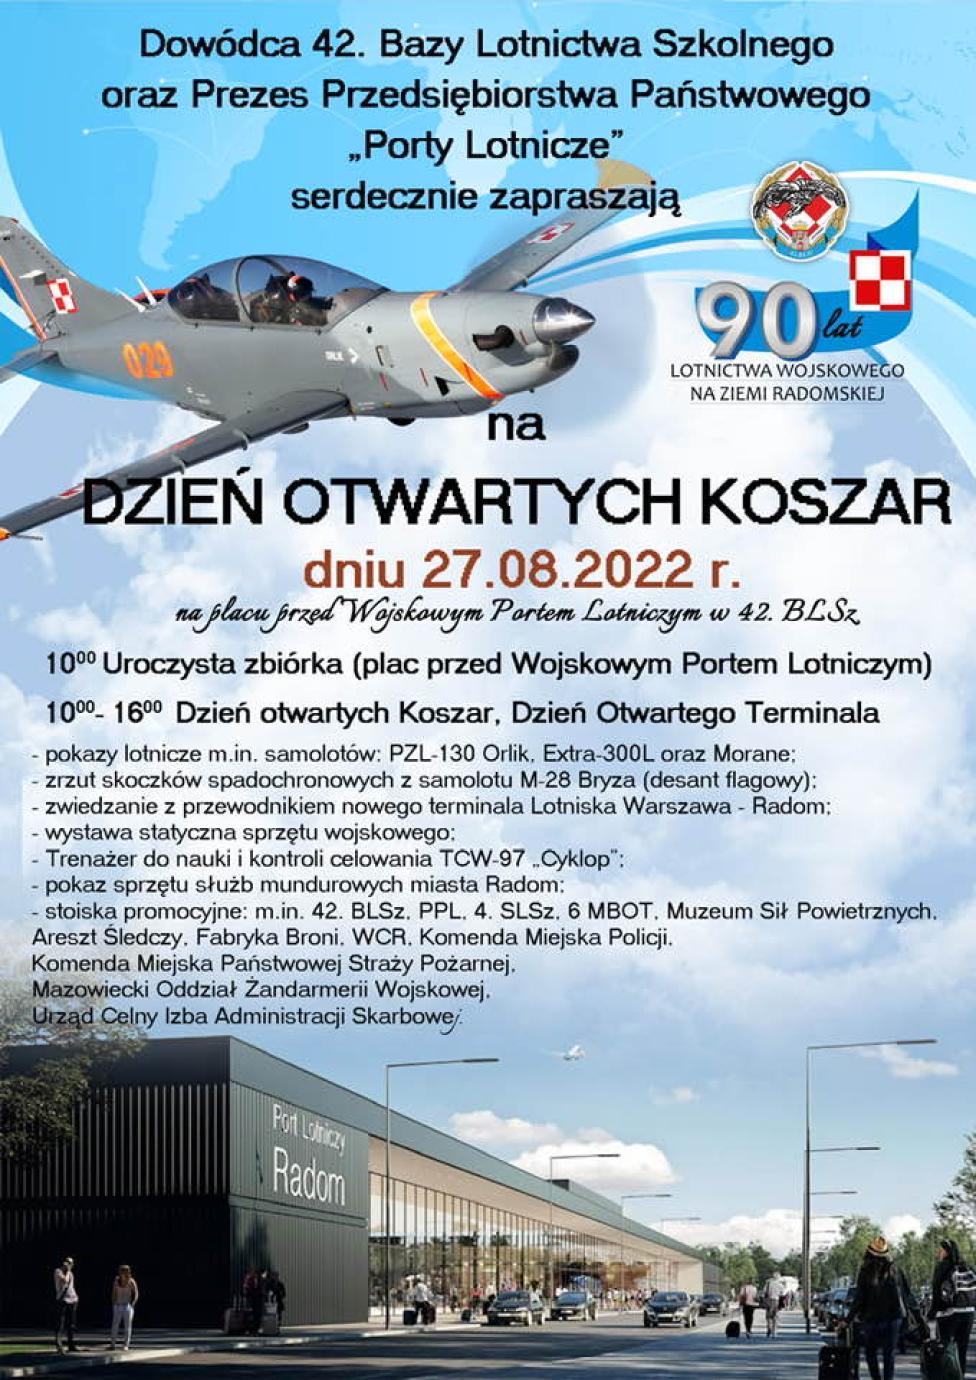 Dzień Otwartych Koszar 42. Bazy Lotnictwa Szkolnego w Radomiu (fot. 42 Baza Lotnictwa Szkolnego)